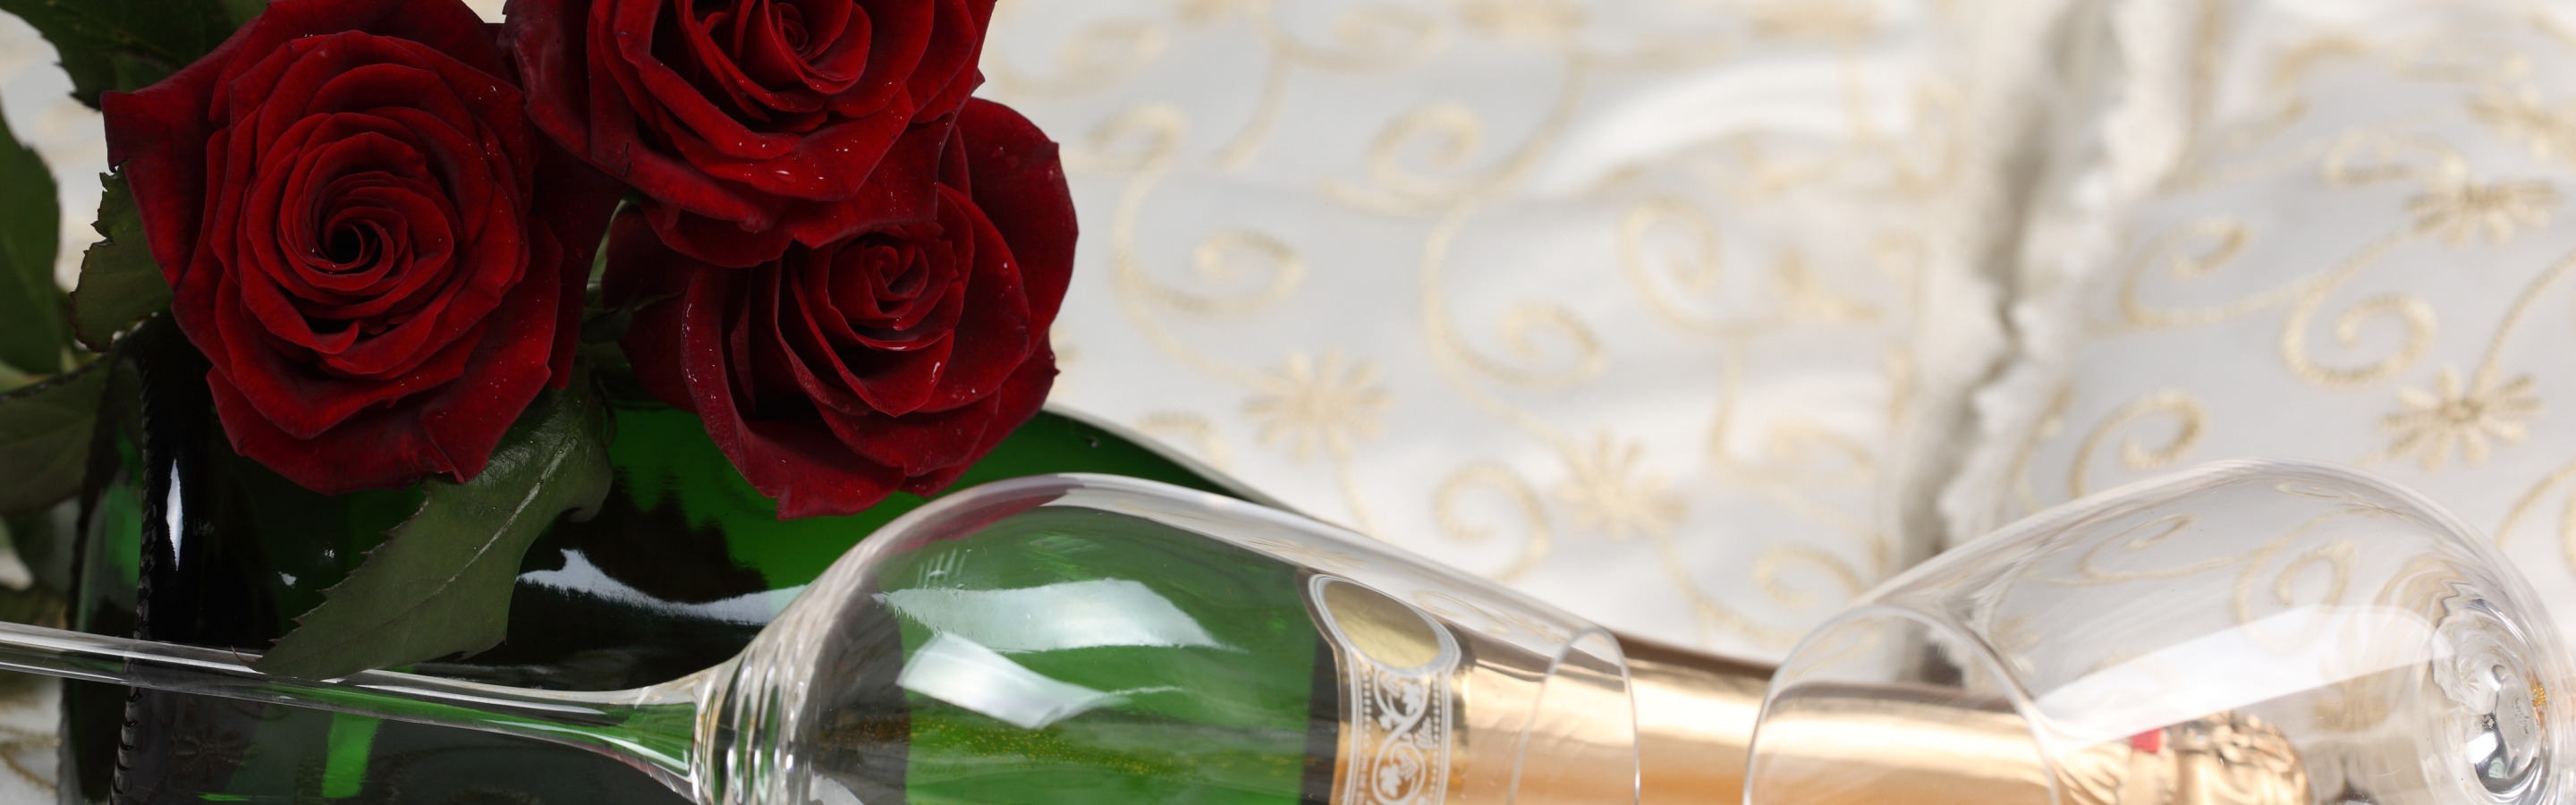 Шампанское и розы читать на русском полностью. Цветы и шампанское. Шампанское и розы. Фон шампанское цветы. Свадебный торт и шампанское.